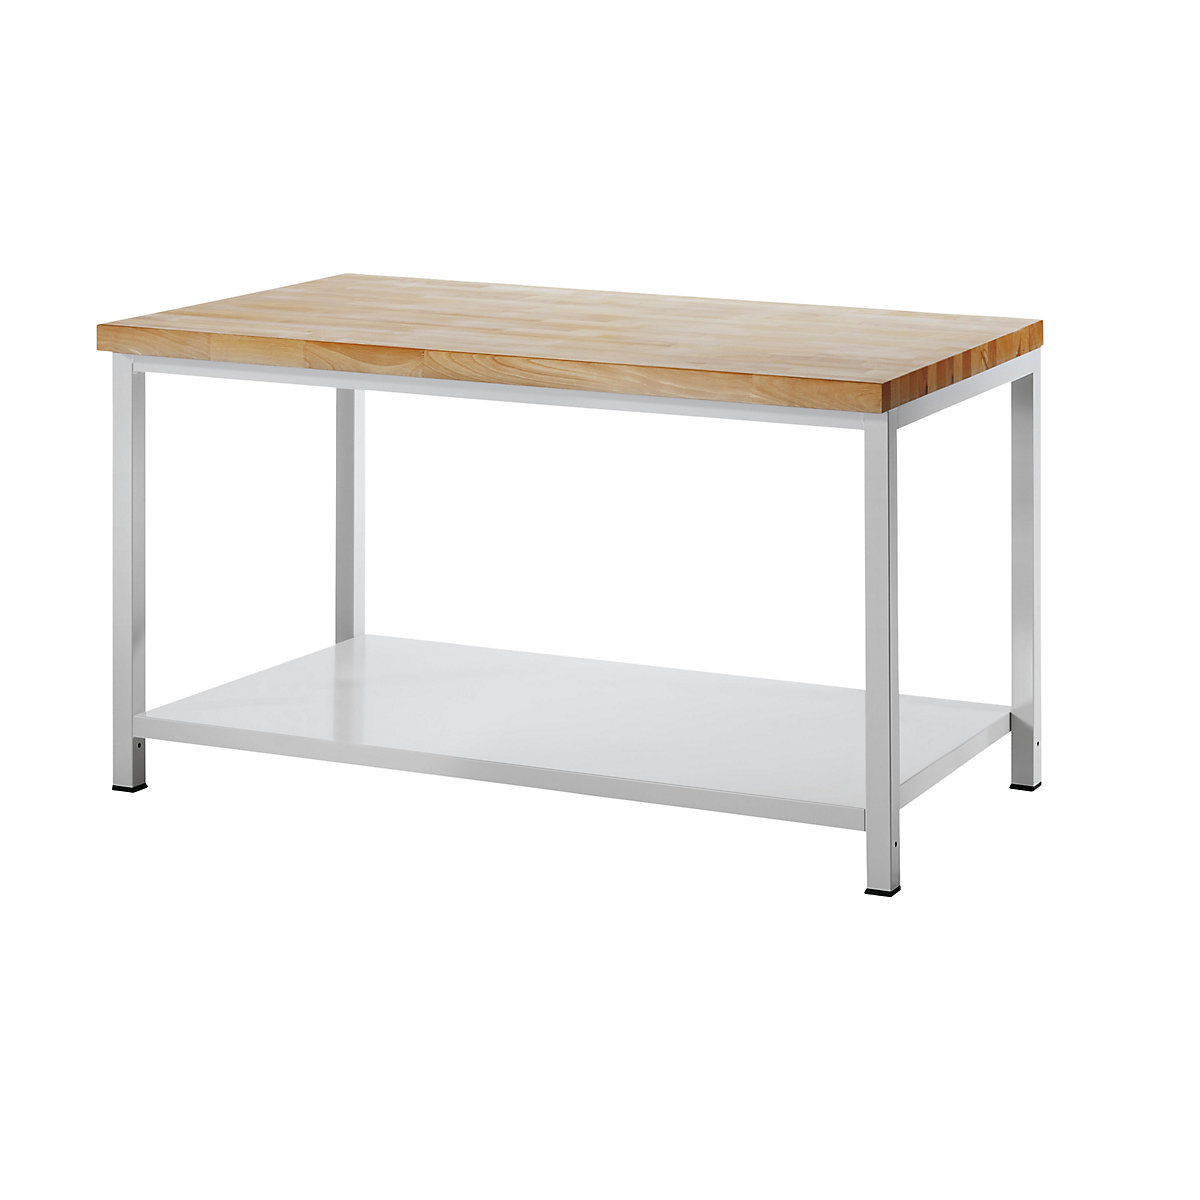 Stół warsztatowy, konstrukcja ramowa – RAU, 1 półka z blachy stalowej, głęb. 900 mm, szer. 1500 mm-3